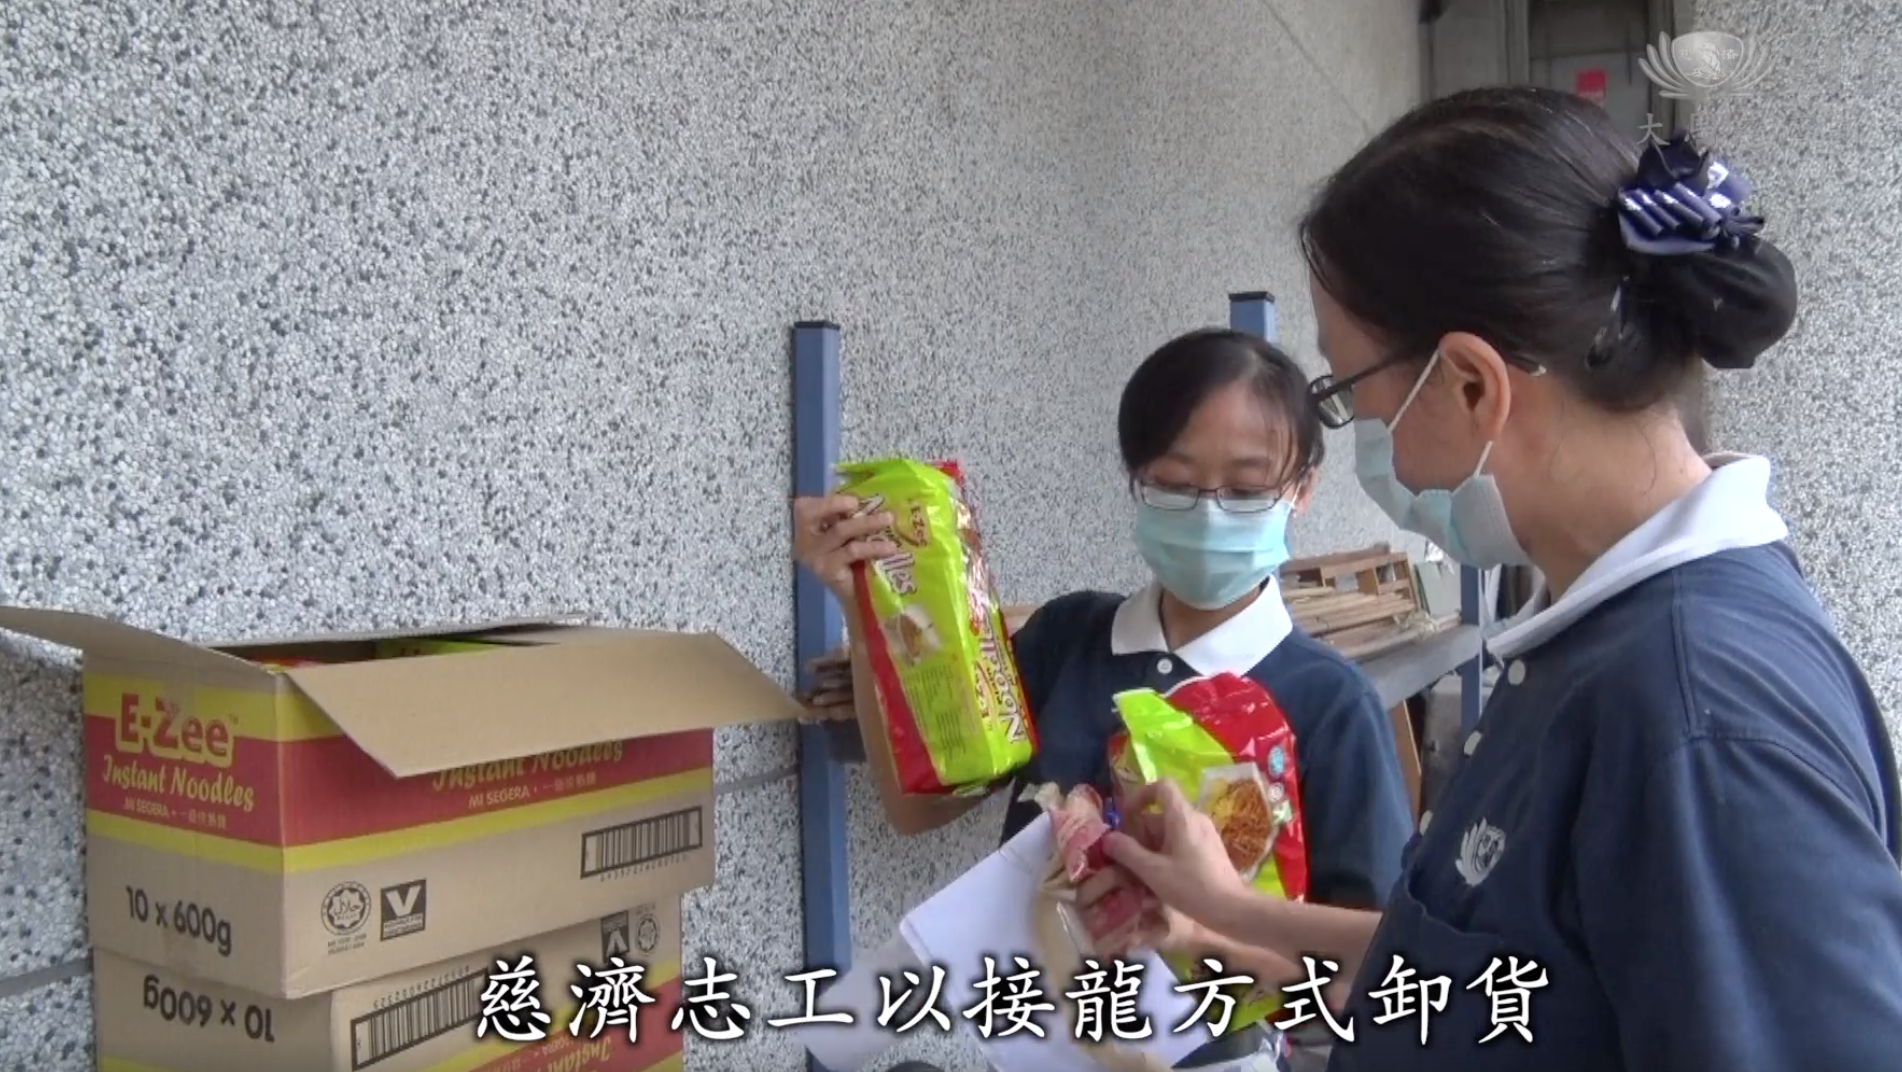 慈济志工以接龙方式卸货将发放给难民粮食分类装箱。-截图自马来西亚慈济基金会脸书-